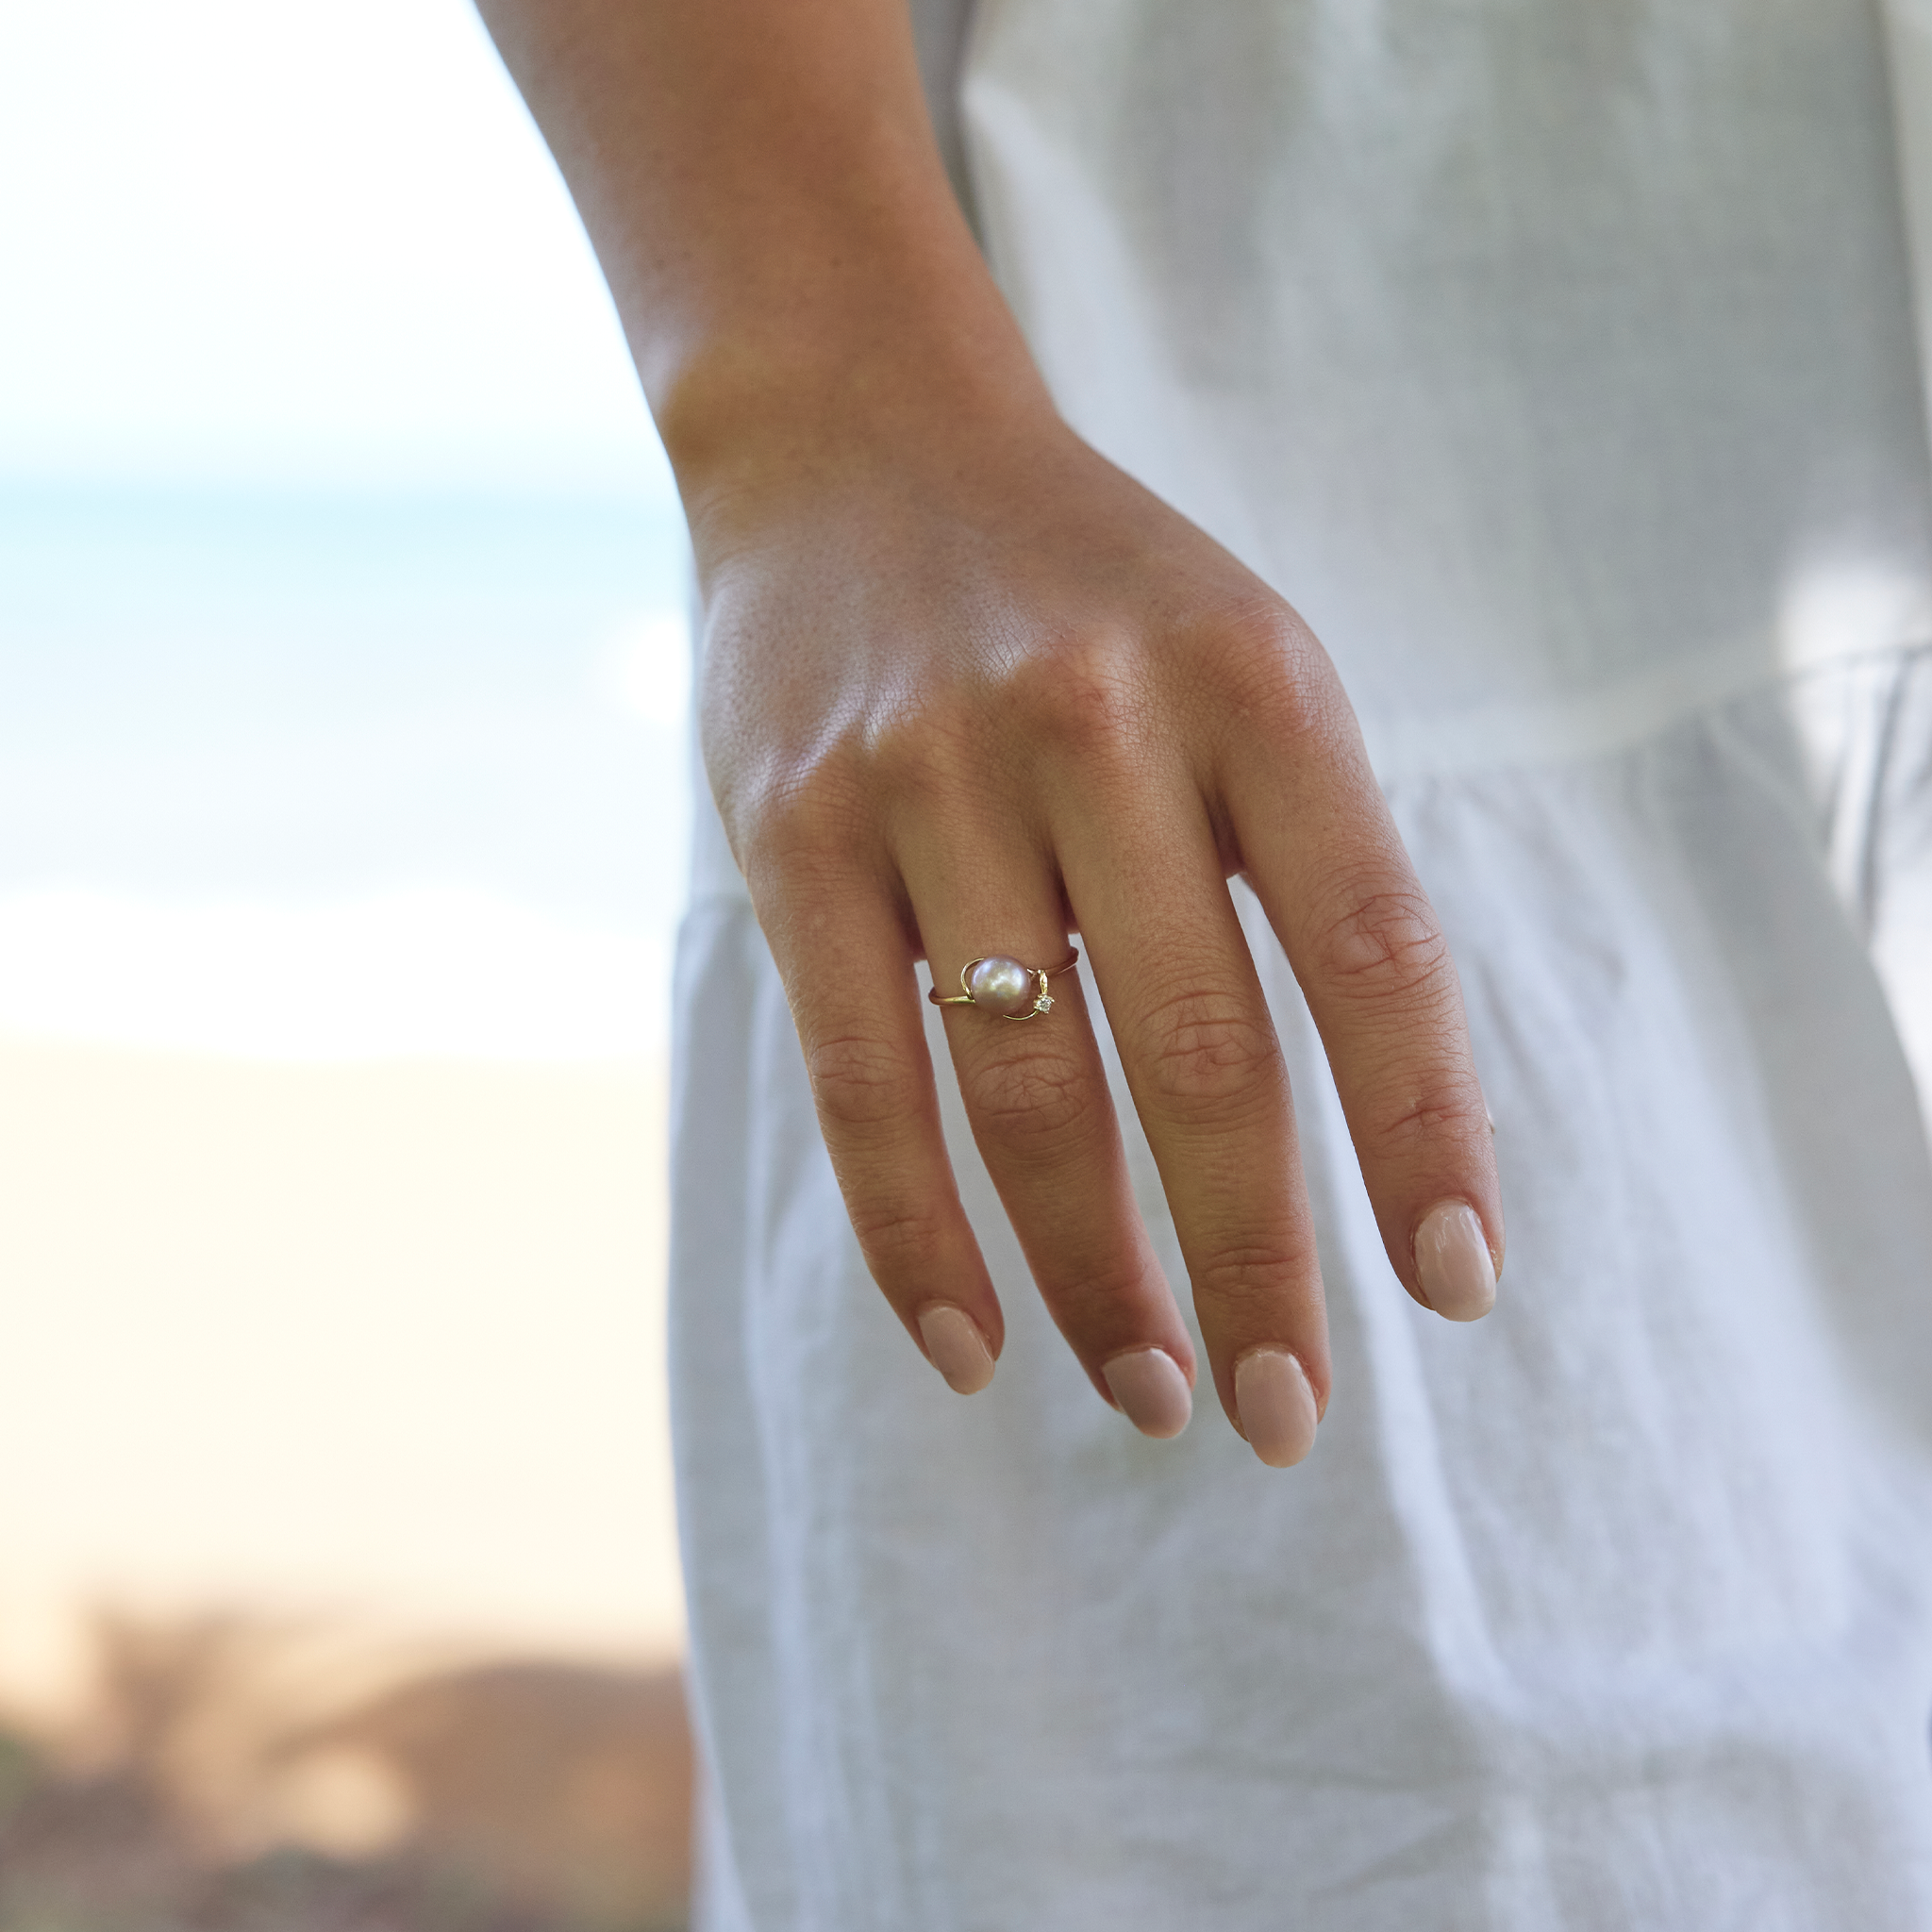 Choisissez un anneau de perle en or avec du diamant